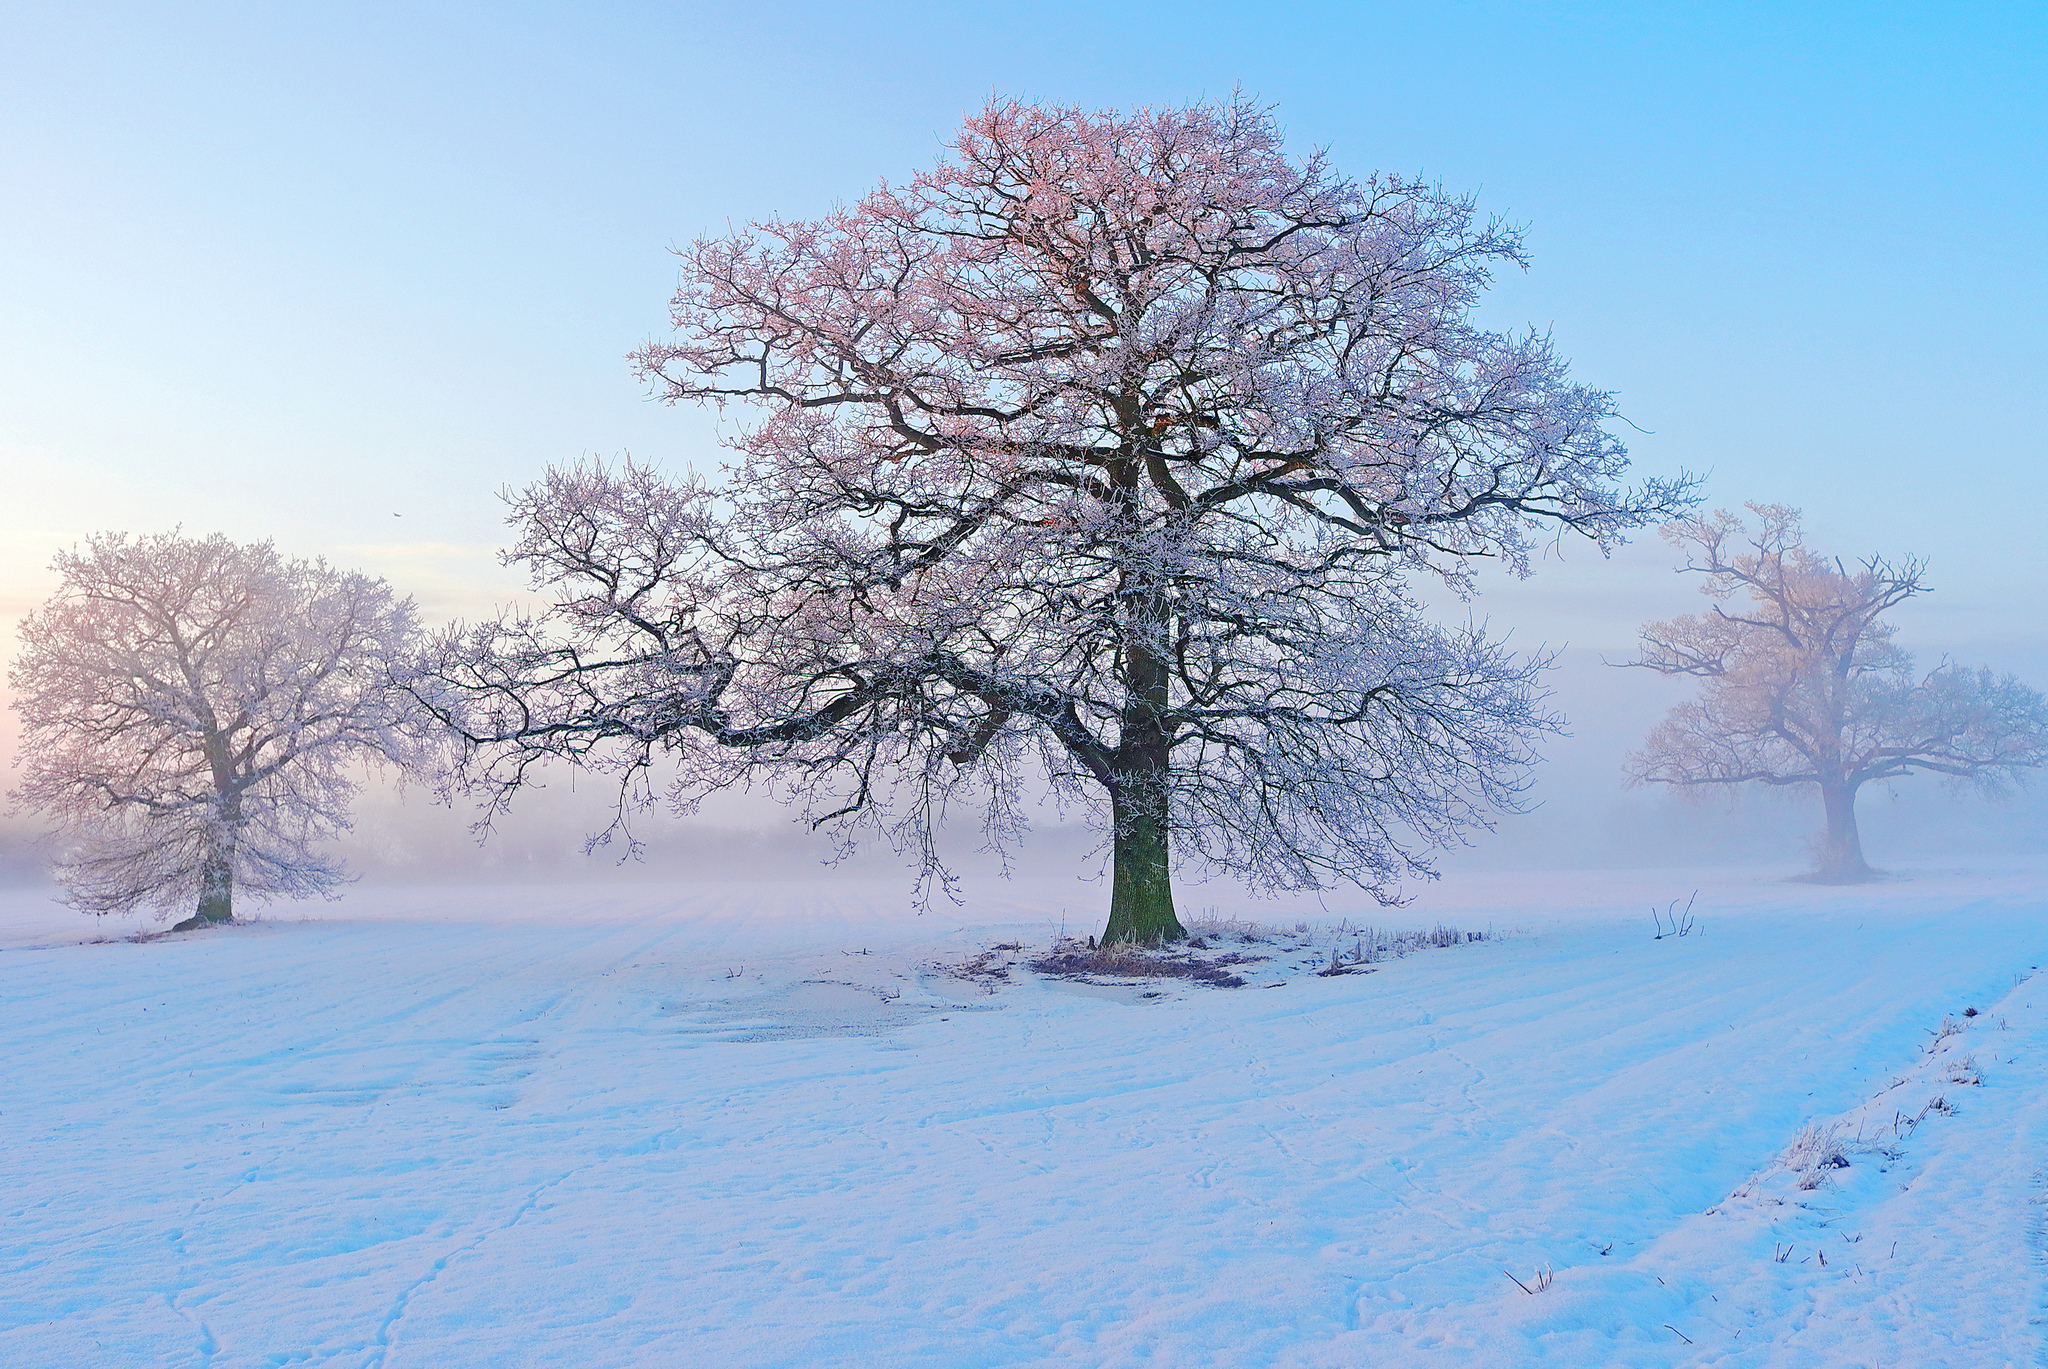 Скачать обои бесплатно Зима, Снег, Дерево, Белый, Земля/природа, Пинк картинка на рабочий стол ПК